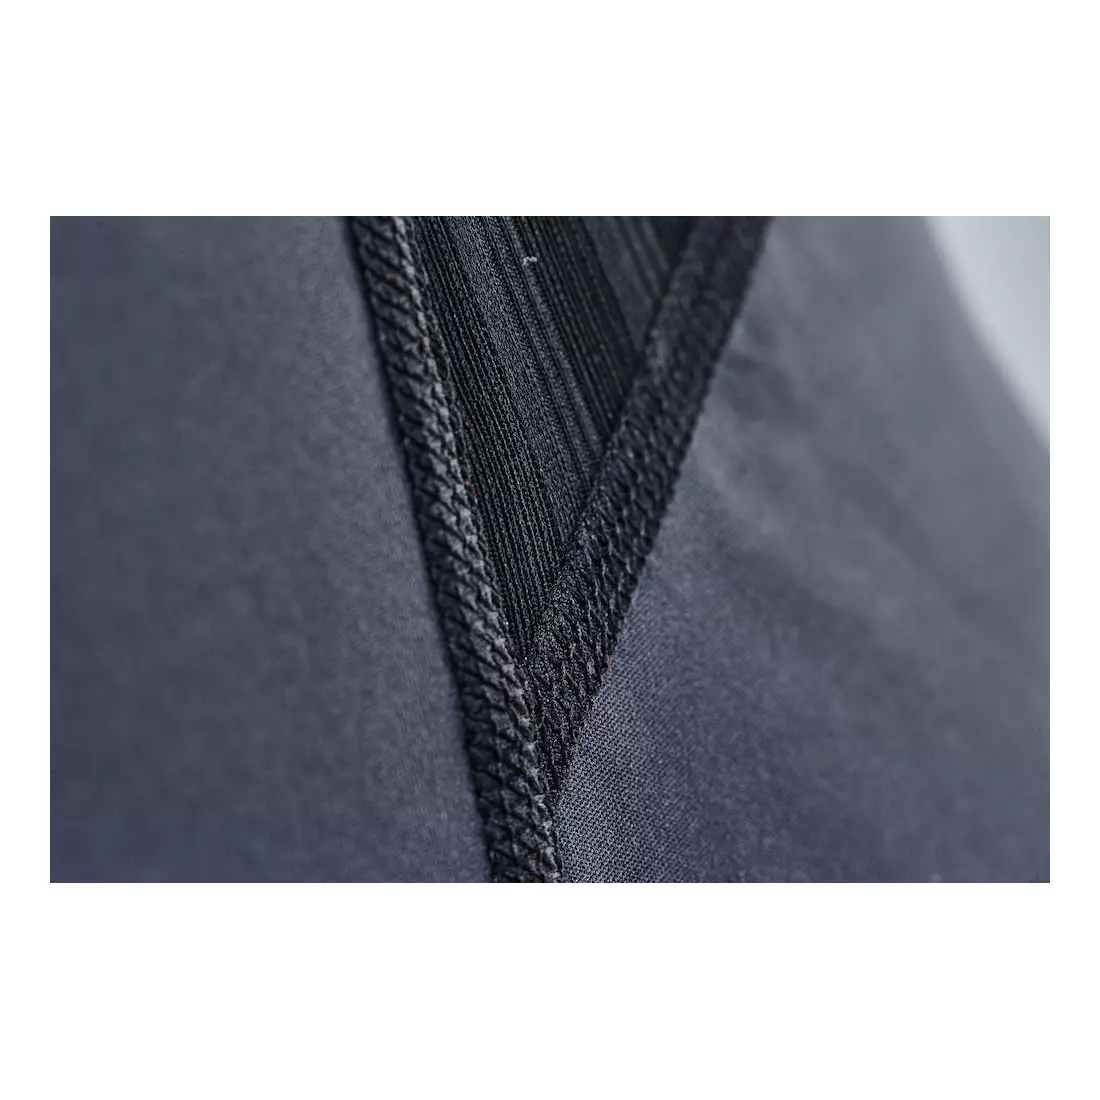 CRAFT EXTREME 2.0 WINDSTOPPER dámské spodní prádlo kalhoty, černé 1904502-9999